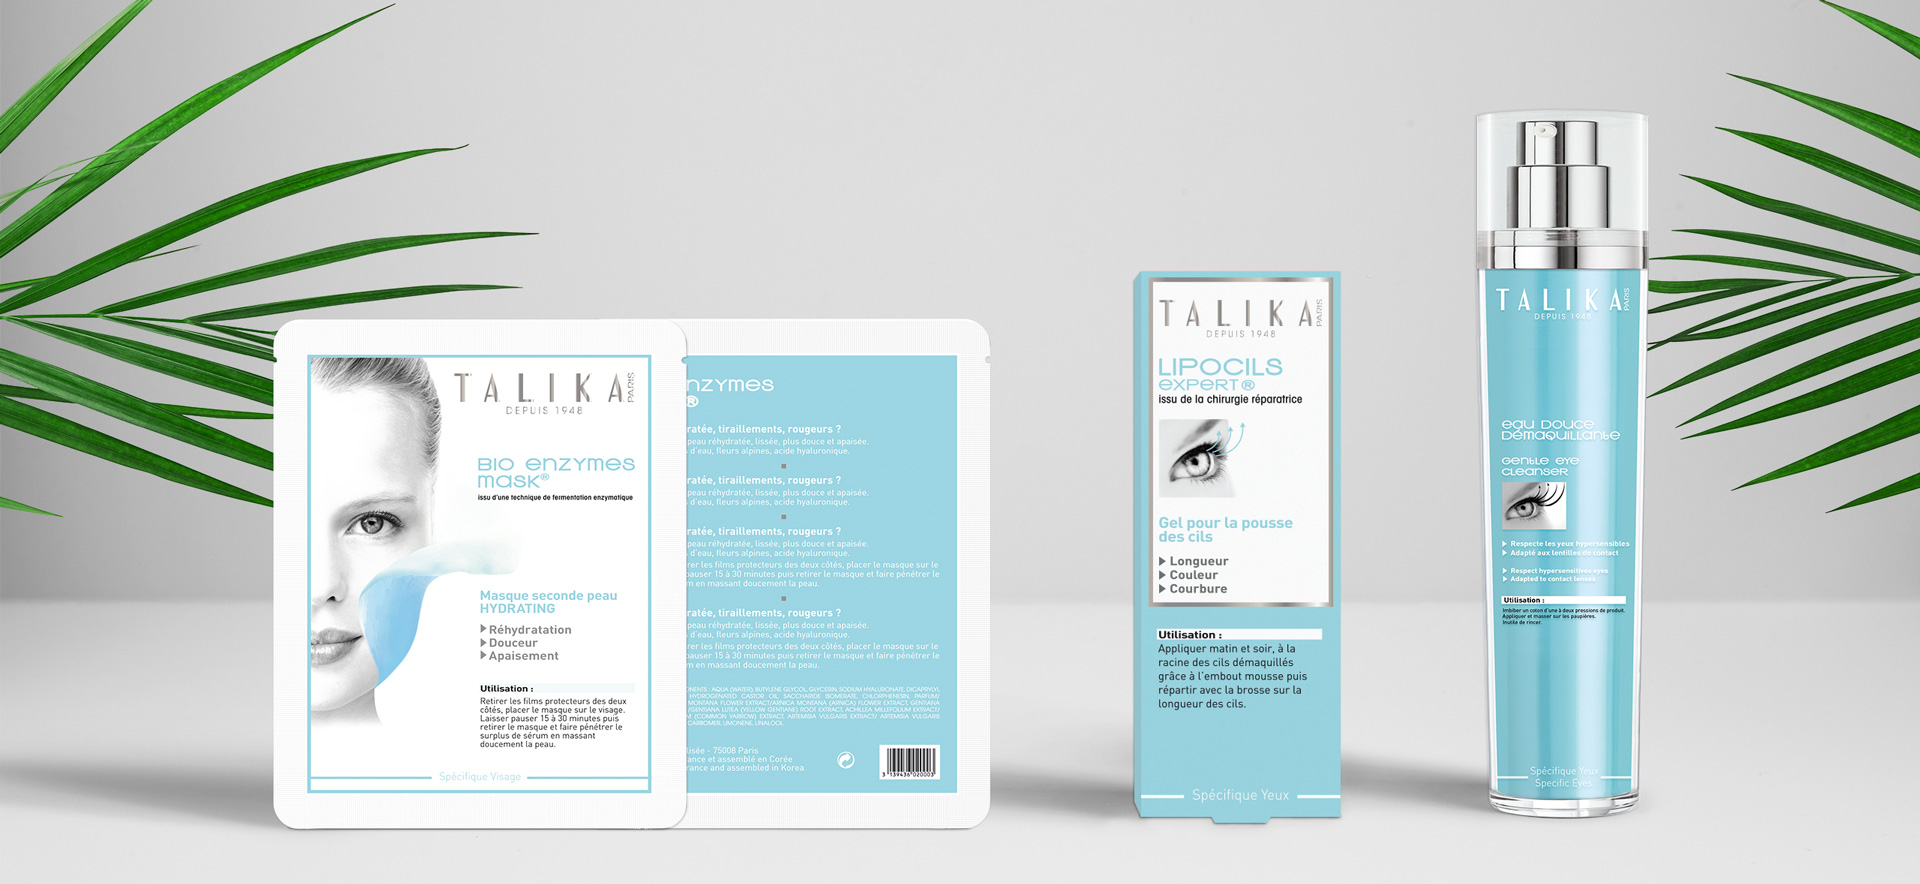 talika-packaging